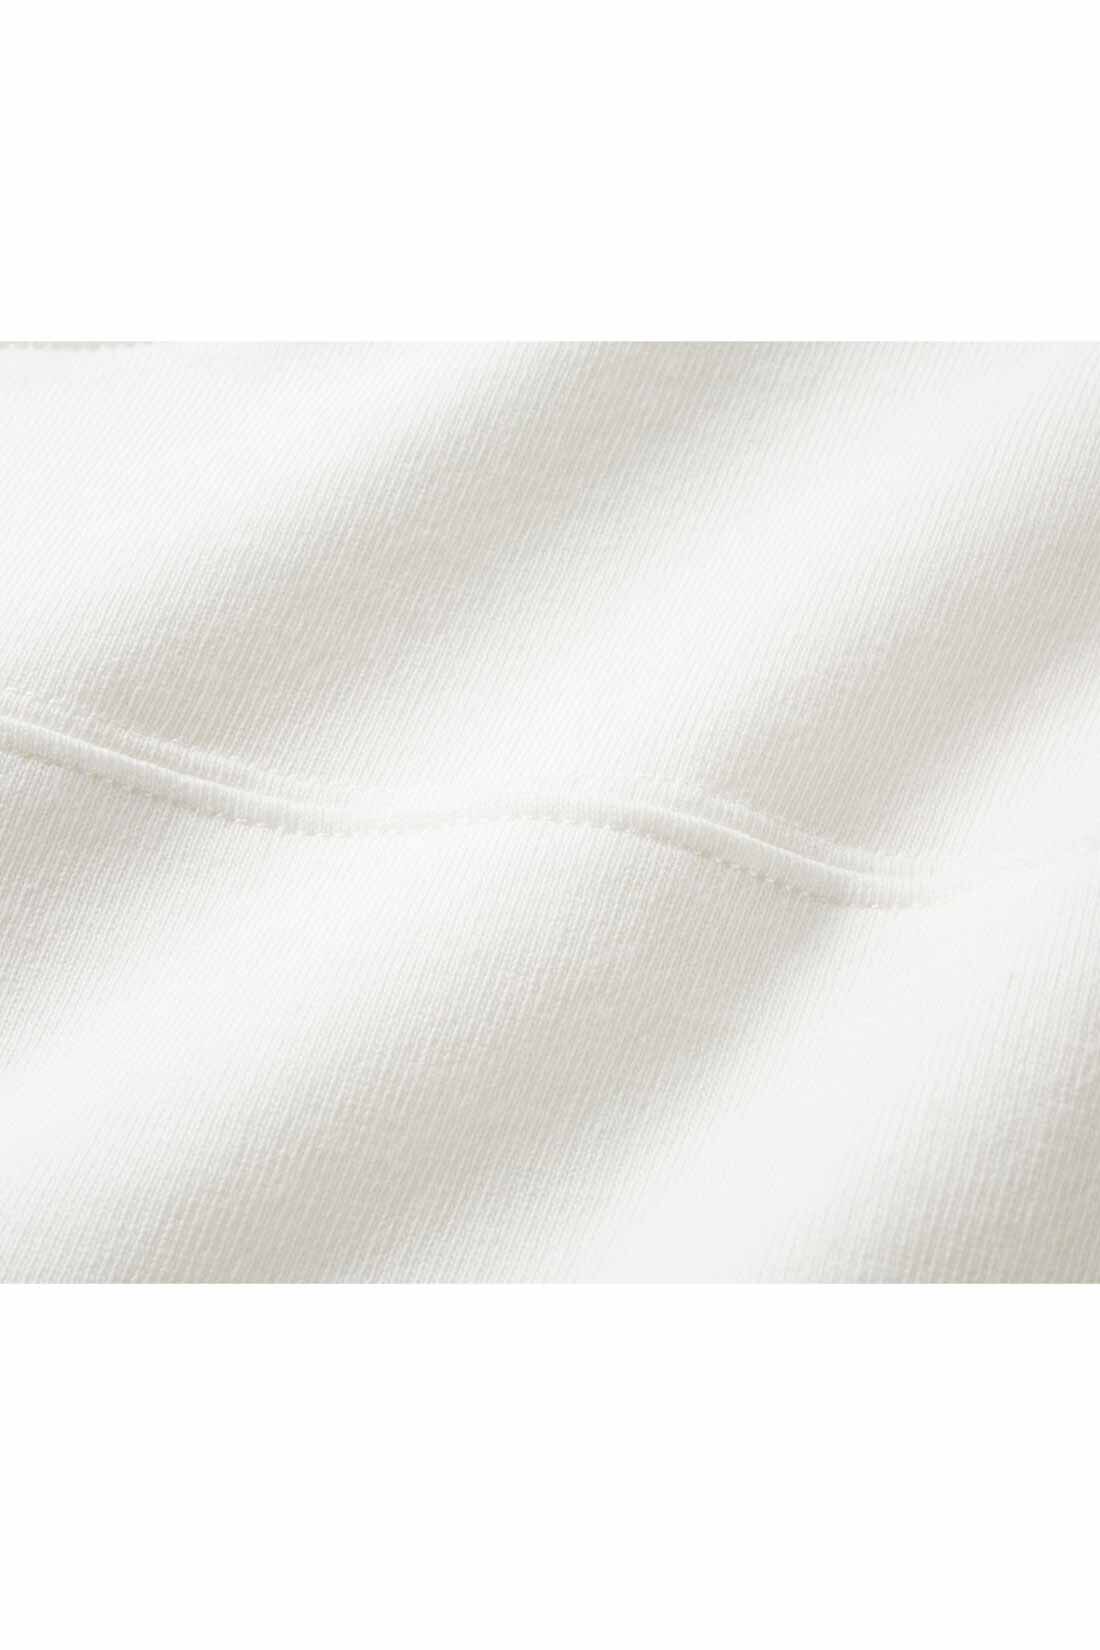 IEDIT|IEDIT[イディット]　小森美穂子さんコラボ コットン素材のフットボール風Tシャツ〈ホワイト〉|ヘビーオンスの綿100％素材ながら、ゴワつかずしなやかな肌ざわり。